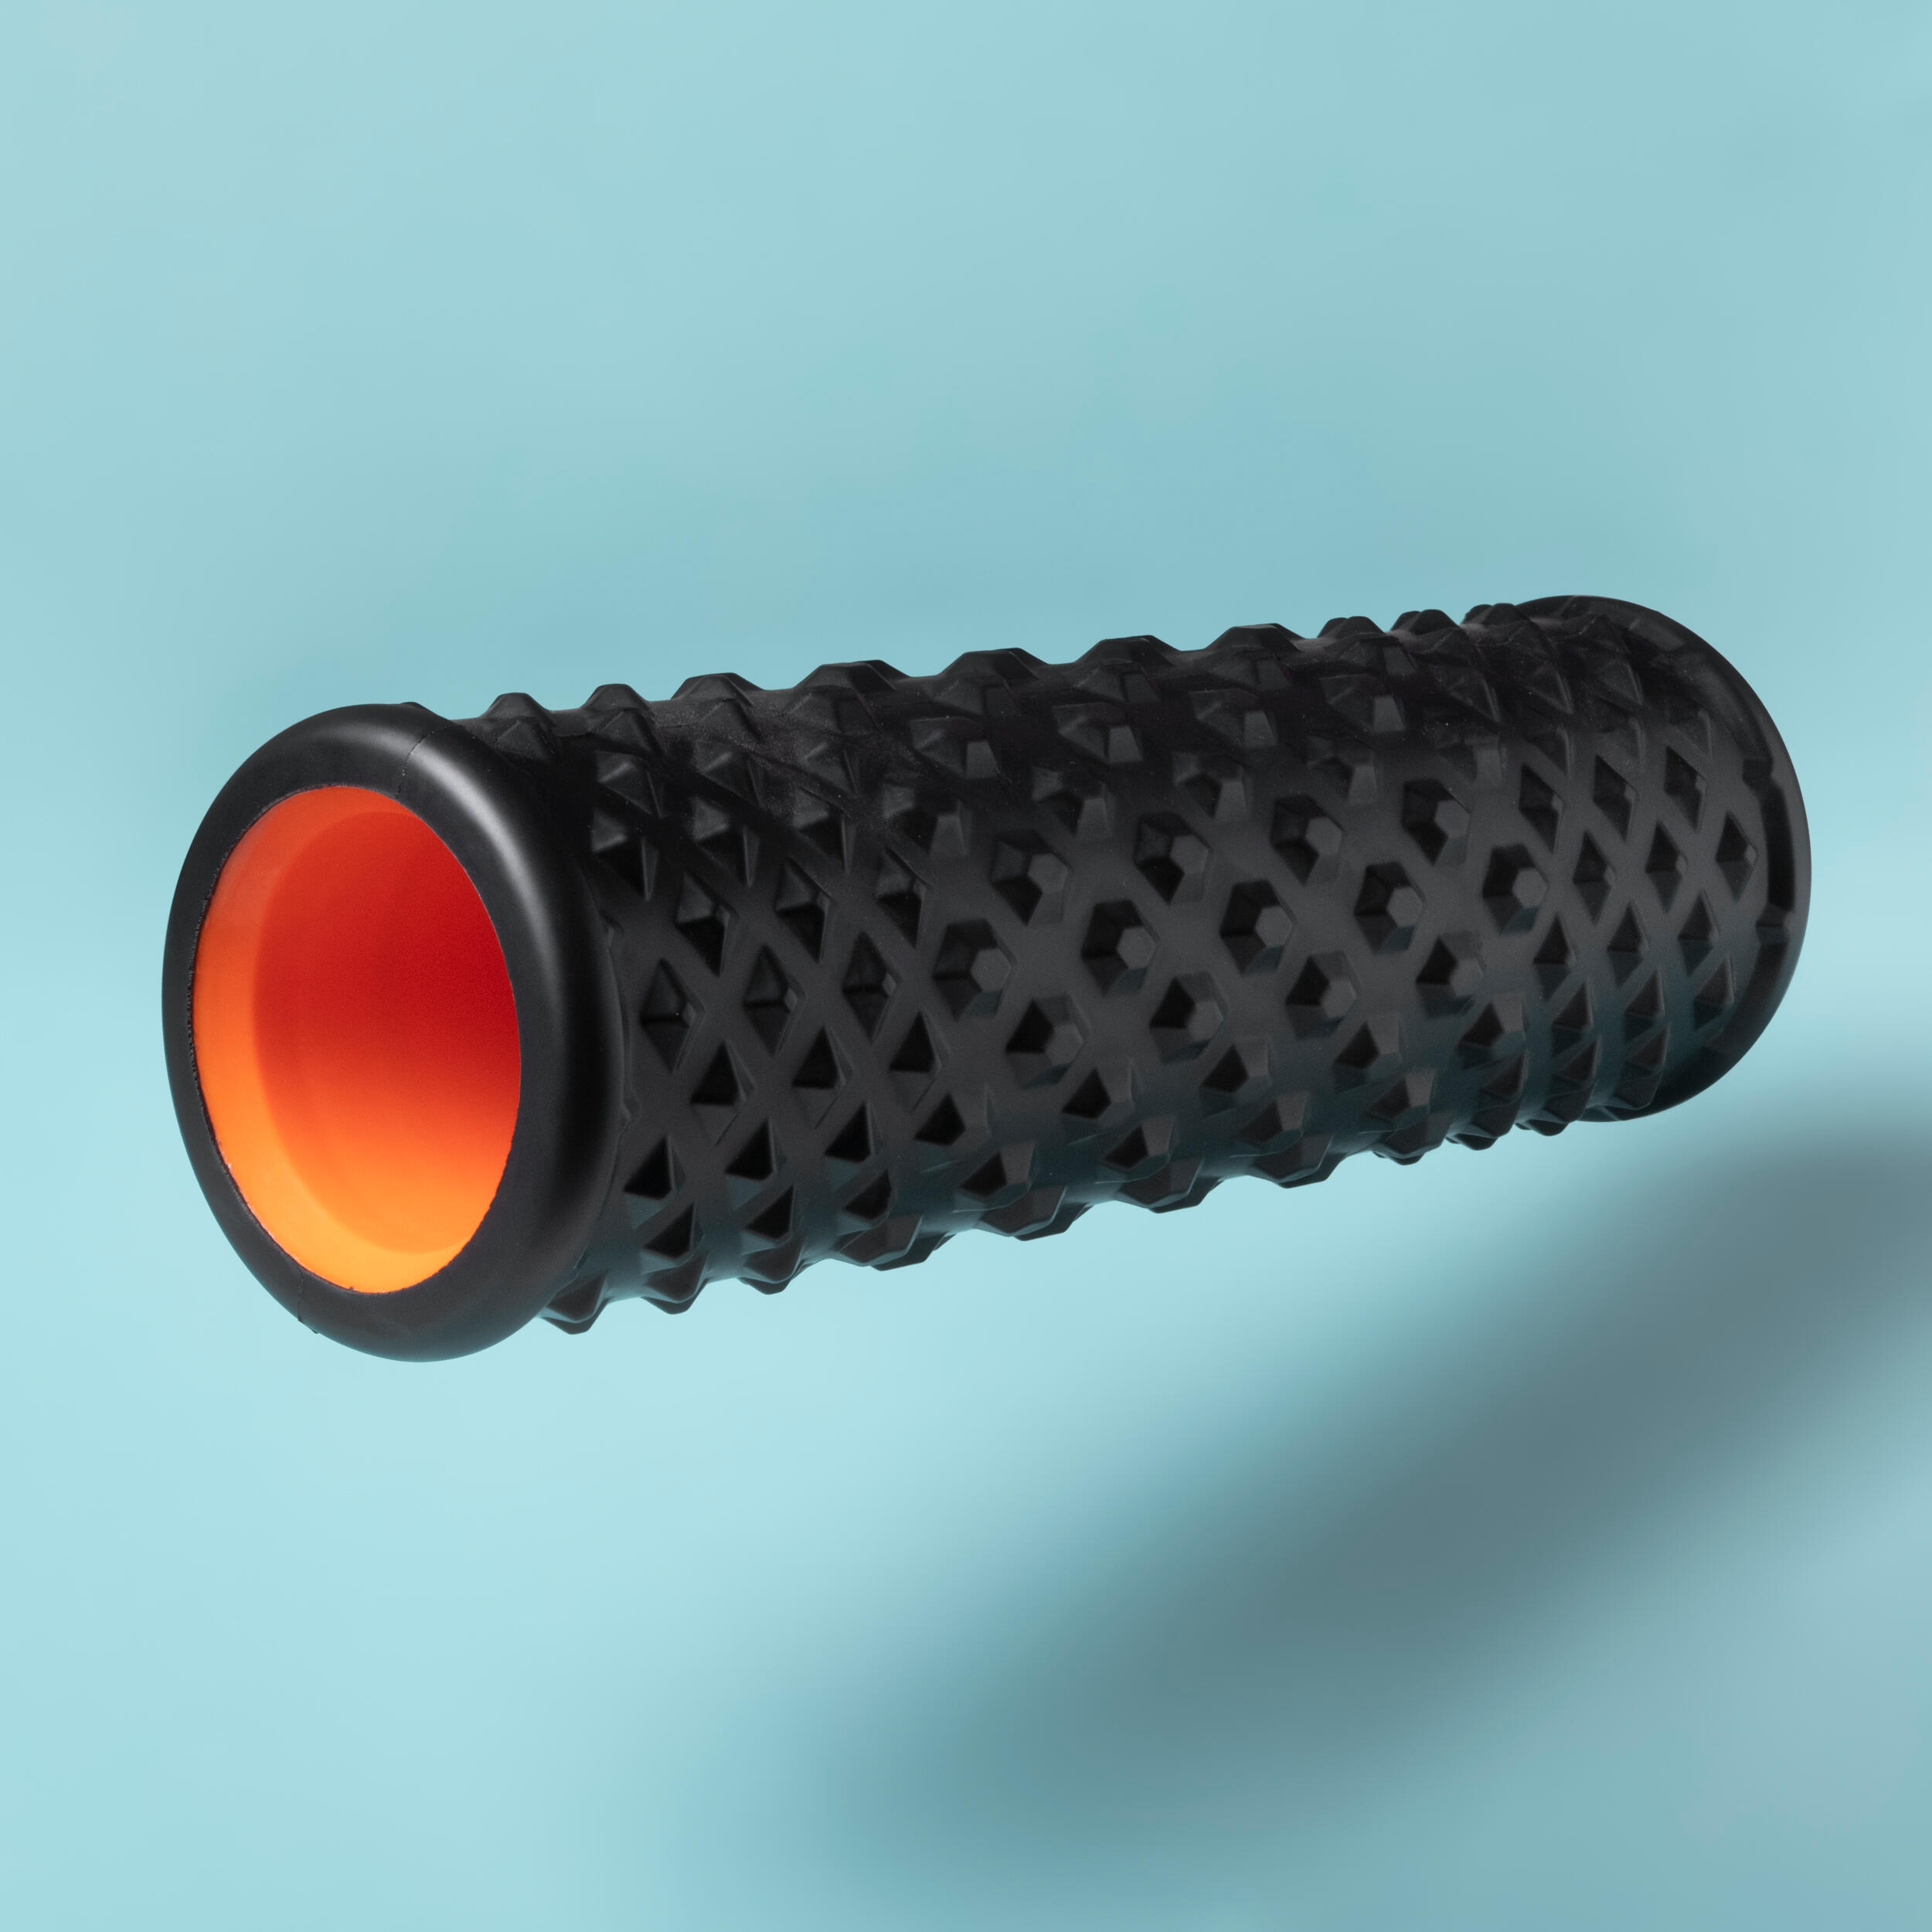 Rodillo Masaje Muscular Rígido Texturizado Yoga Foam Roller – AFxports